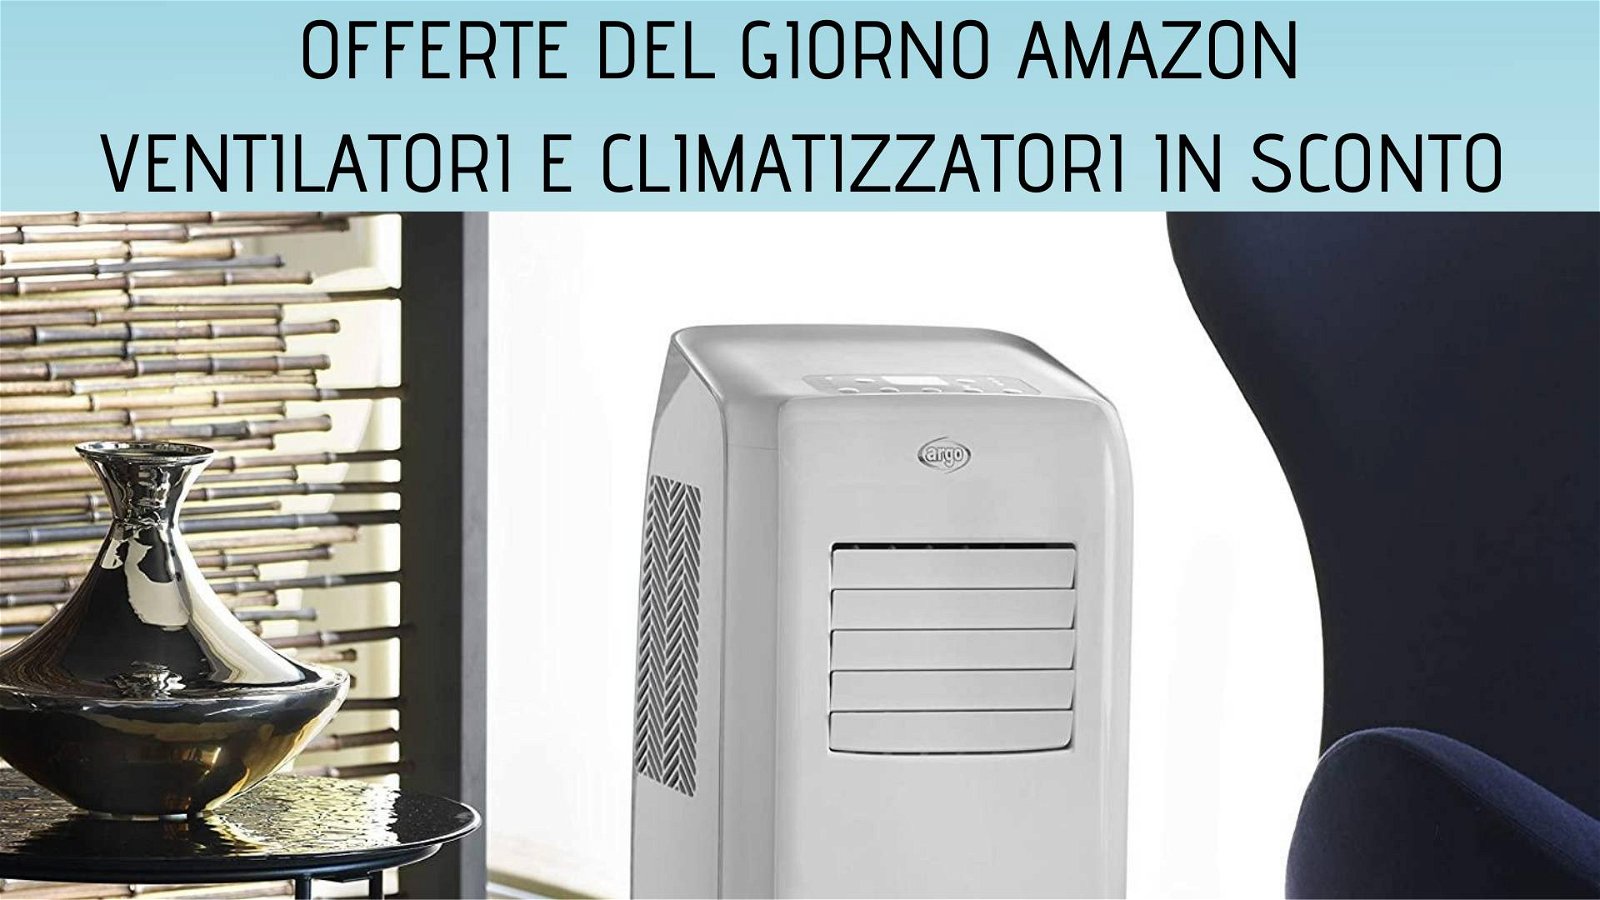 Immagine di Offerte del giorno Amazon: tante offerte su ventilatori e climatizzatori